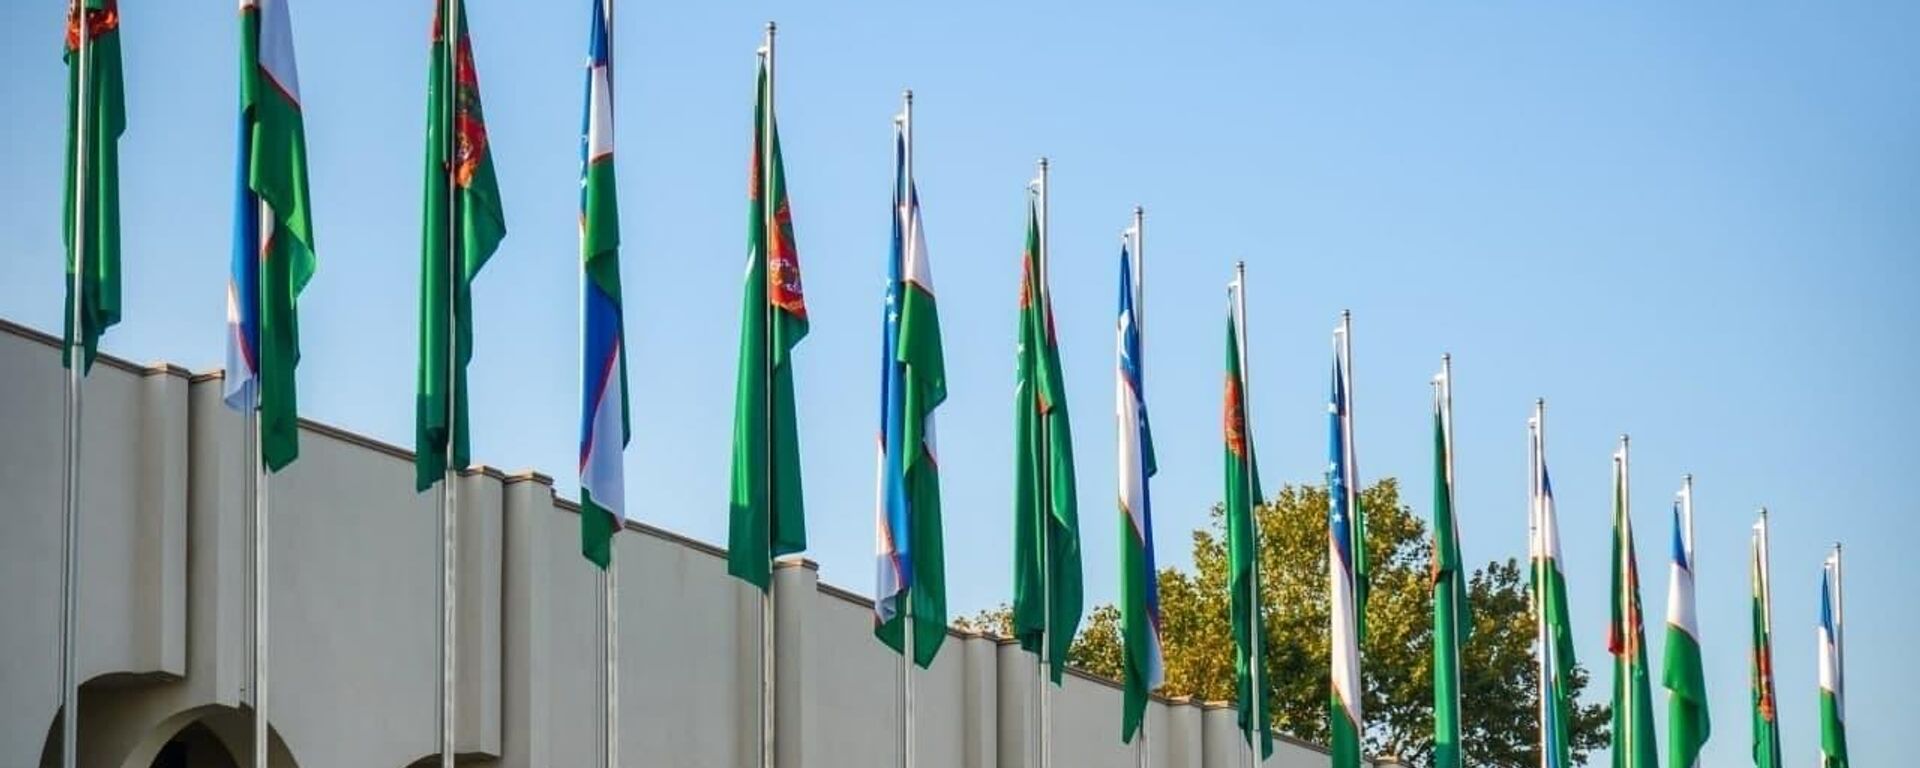 Флаги Узбекистана ва Туркменистана - Sputnik Ўзбекистон, 1920, 05.10.2021